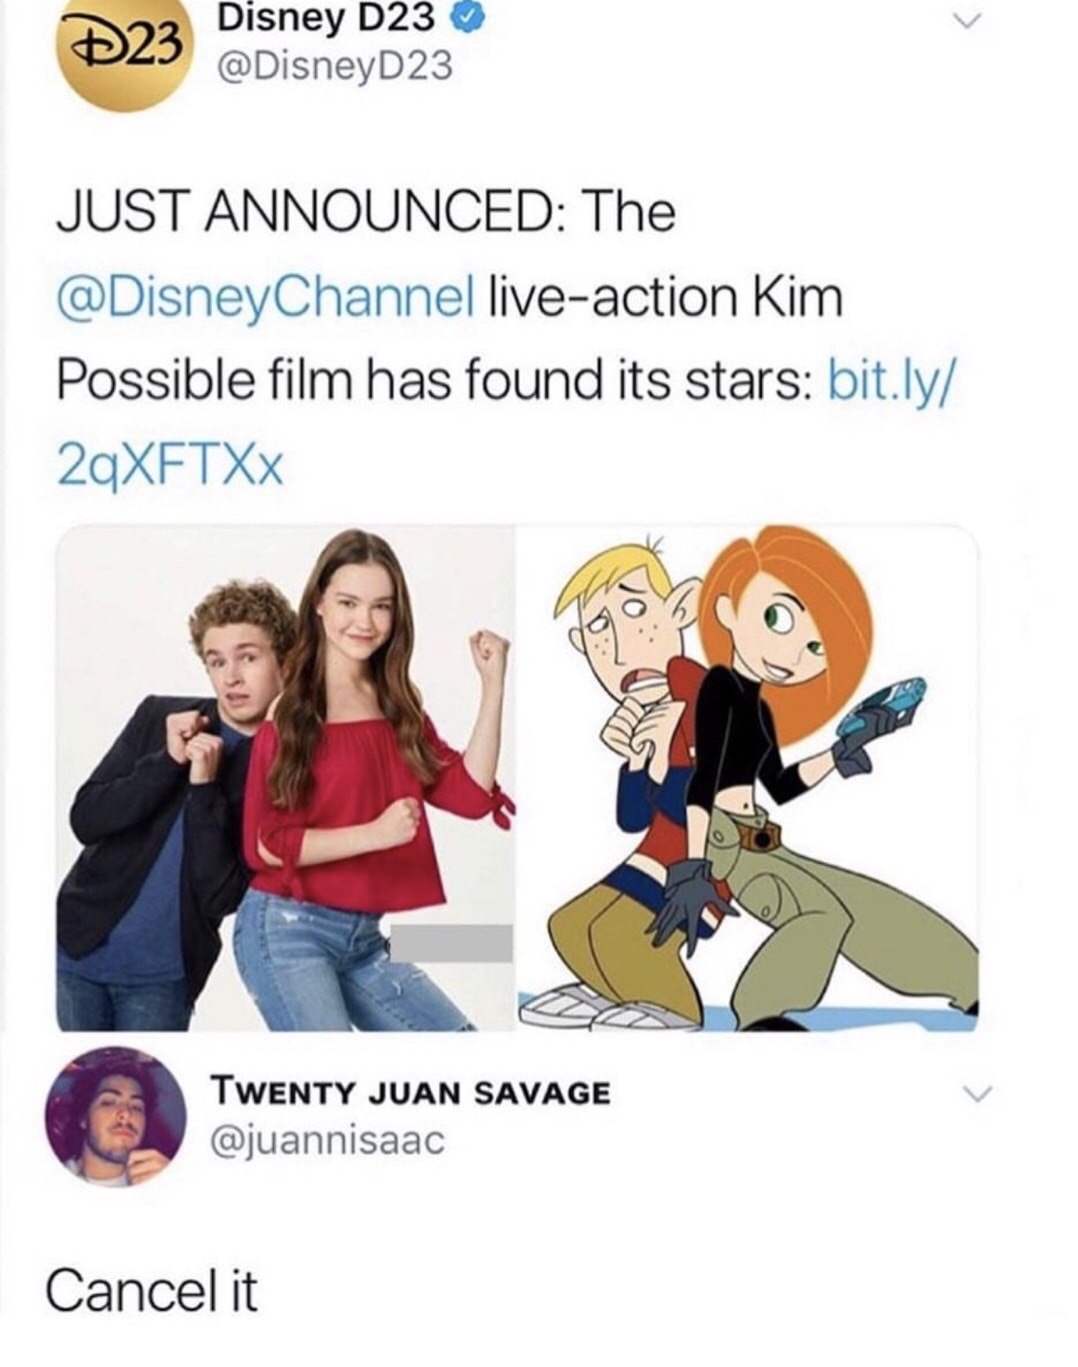 meme - kim possible live action meme - D23 Disney D23 Just Announced The Channel liveaction Kim Possible film has found its stars bit.ly 2qXFTXX Twenty Juan Savage Cancel it